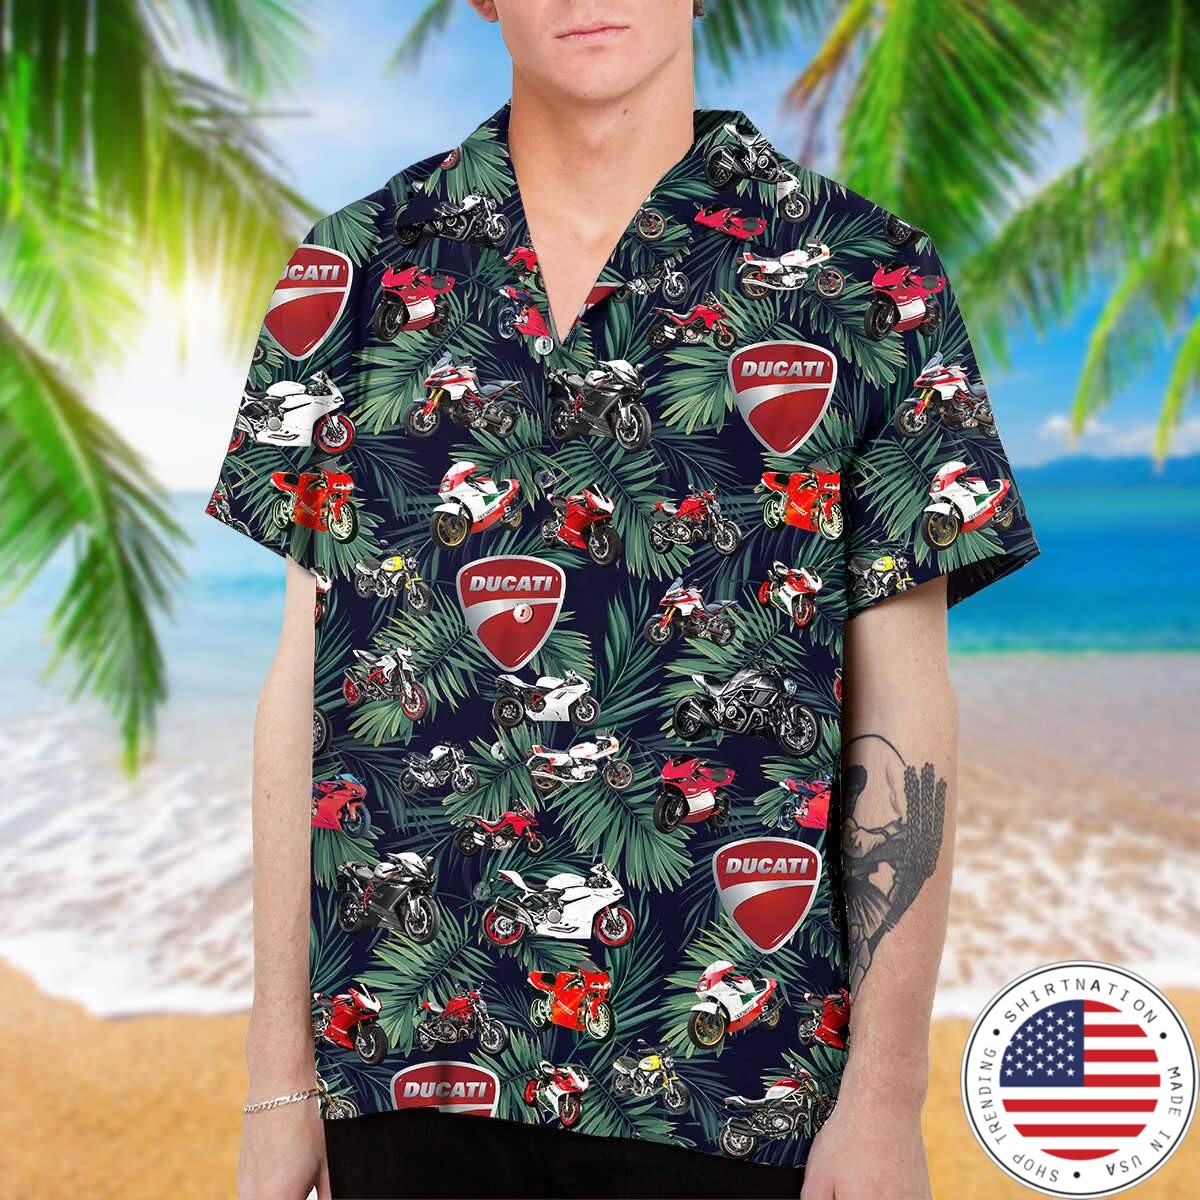 Ducati hawaiian shirt as